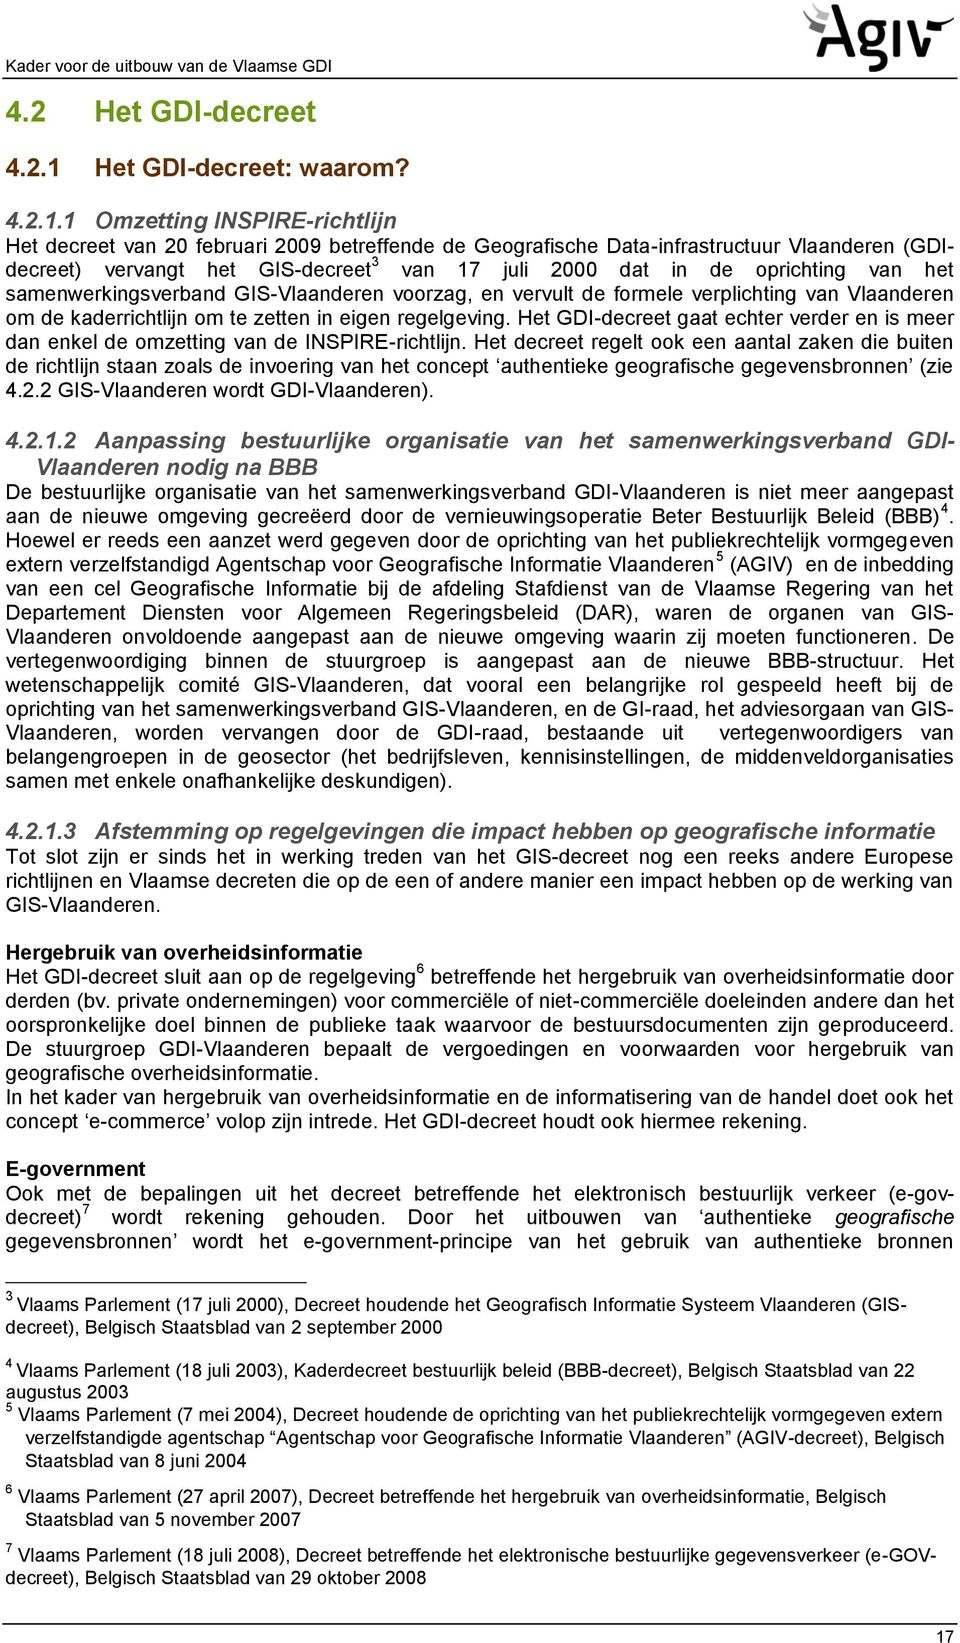 1 Omzetting INSPIRE-richtlijn Het decreet van 20 februari 2009 betreffende de Geografische Data-infrastructuur Vlaanderen (GDIdecreet) vervangt het GIS-decreet 3 van 17 juli 2000 dat in de oprichting